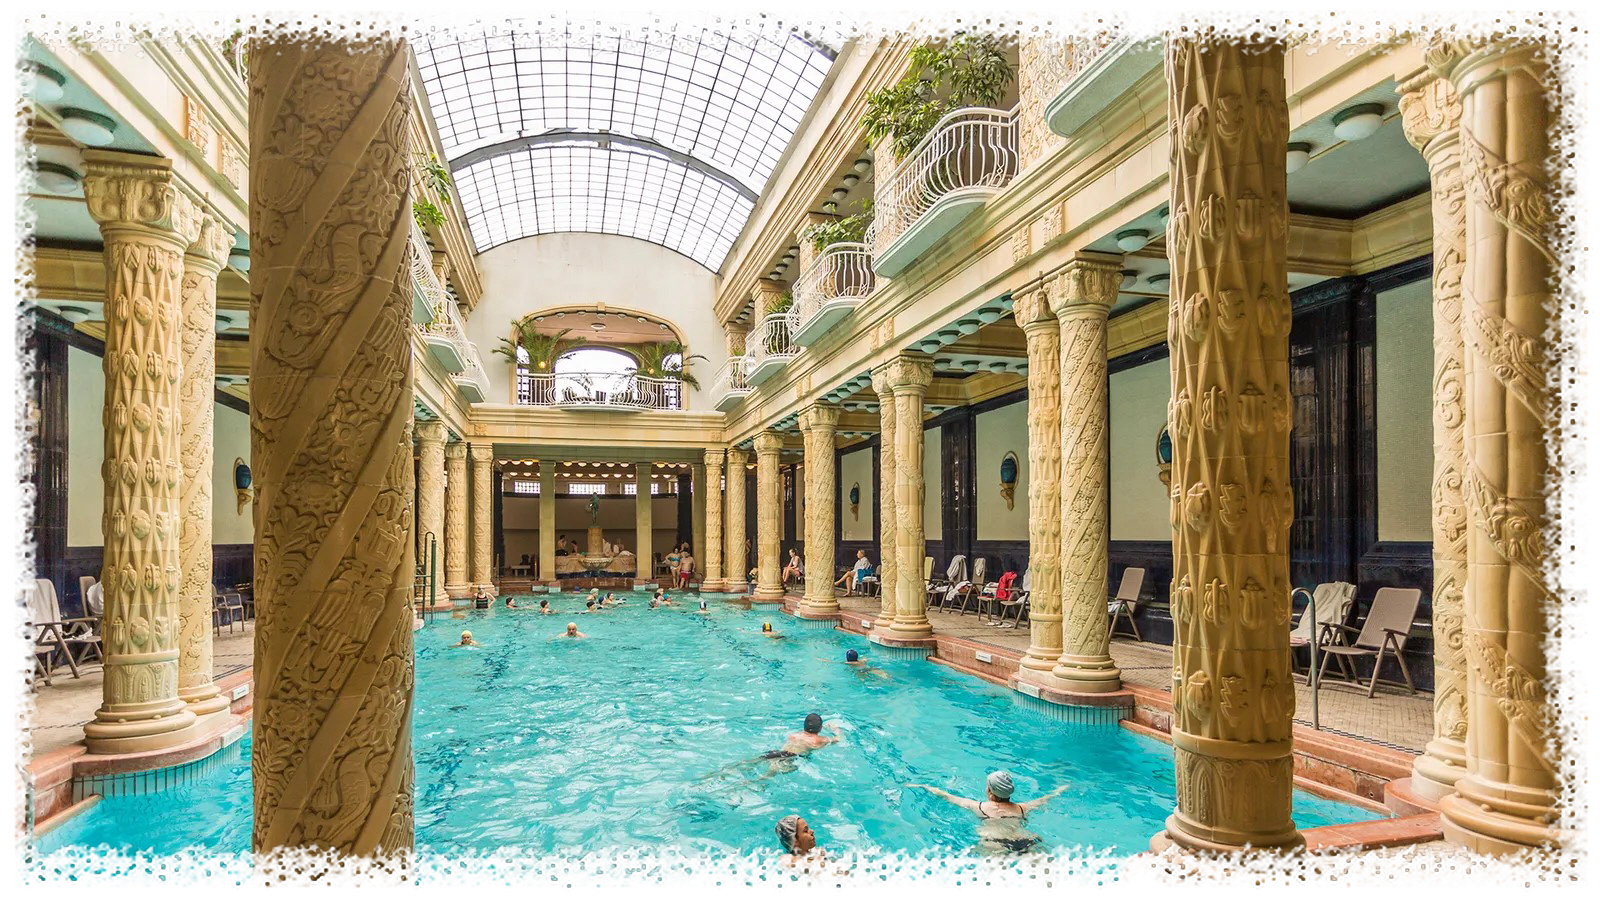 겔레르트 온천탕(Gell&eacute;rt Thermal Bath)은 회복력이 있는 온천수만큼이나 드라마틱한 탈퇴 아르누보 건축물로도 유명합니다